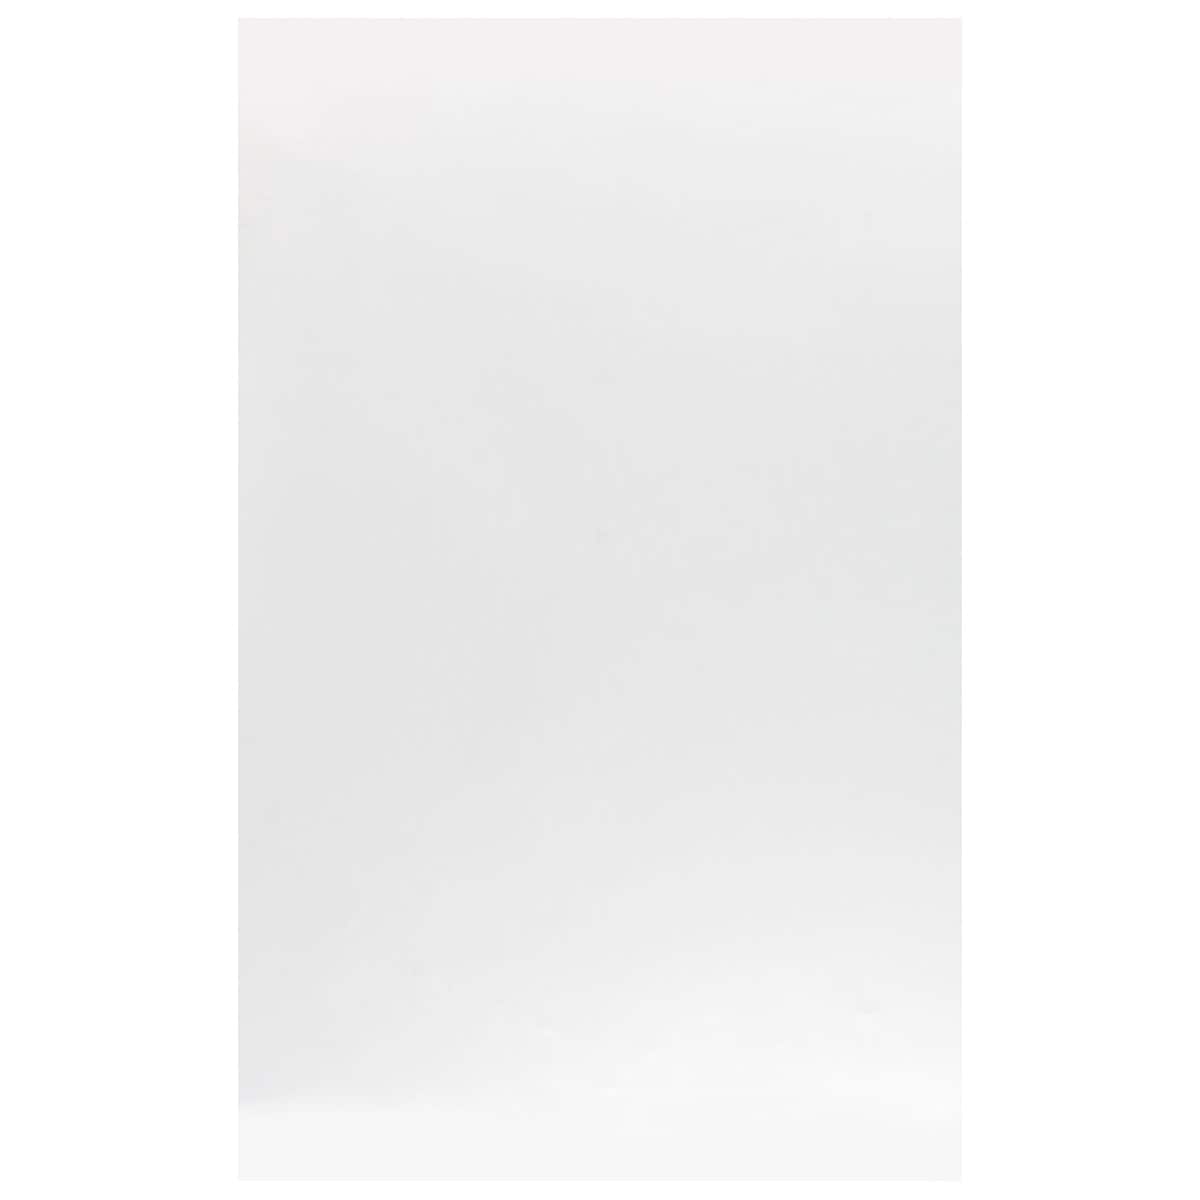 White Poster Board by Panneaux™, 11 x 14